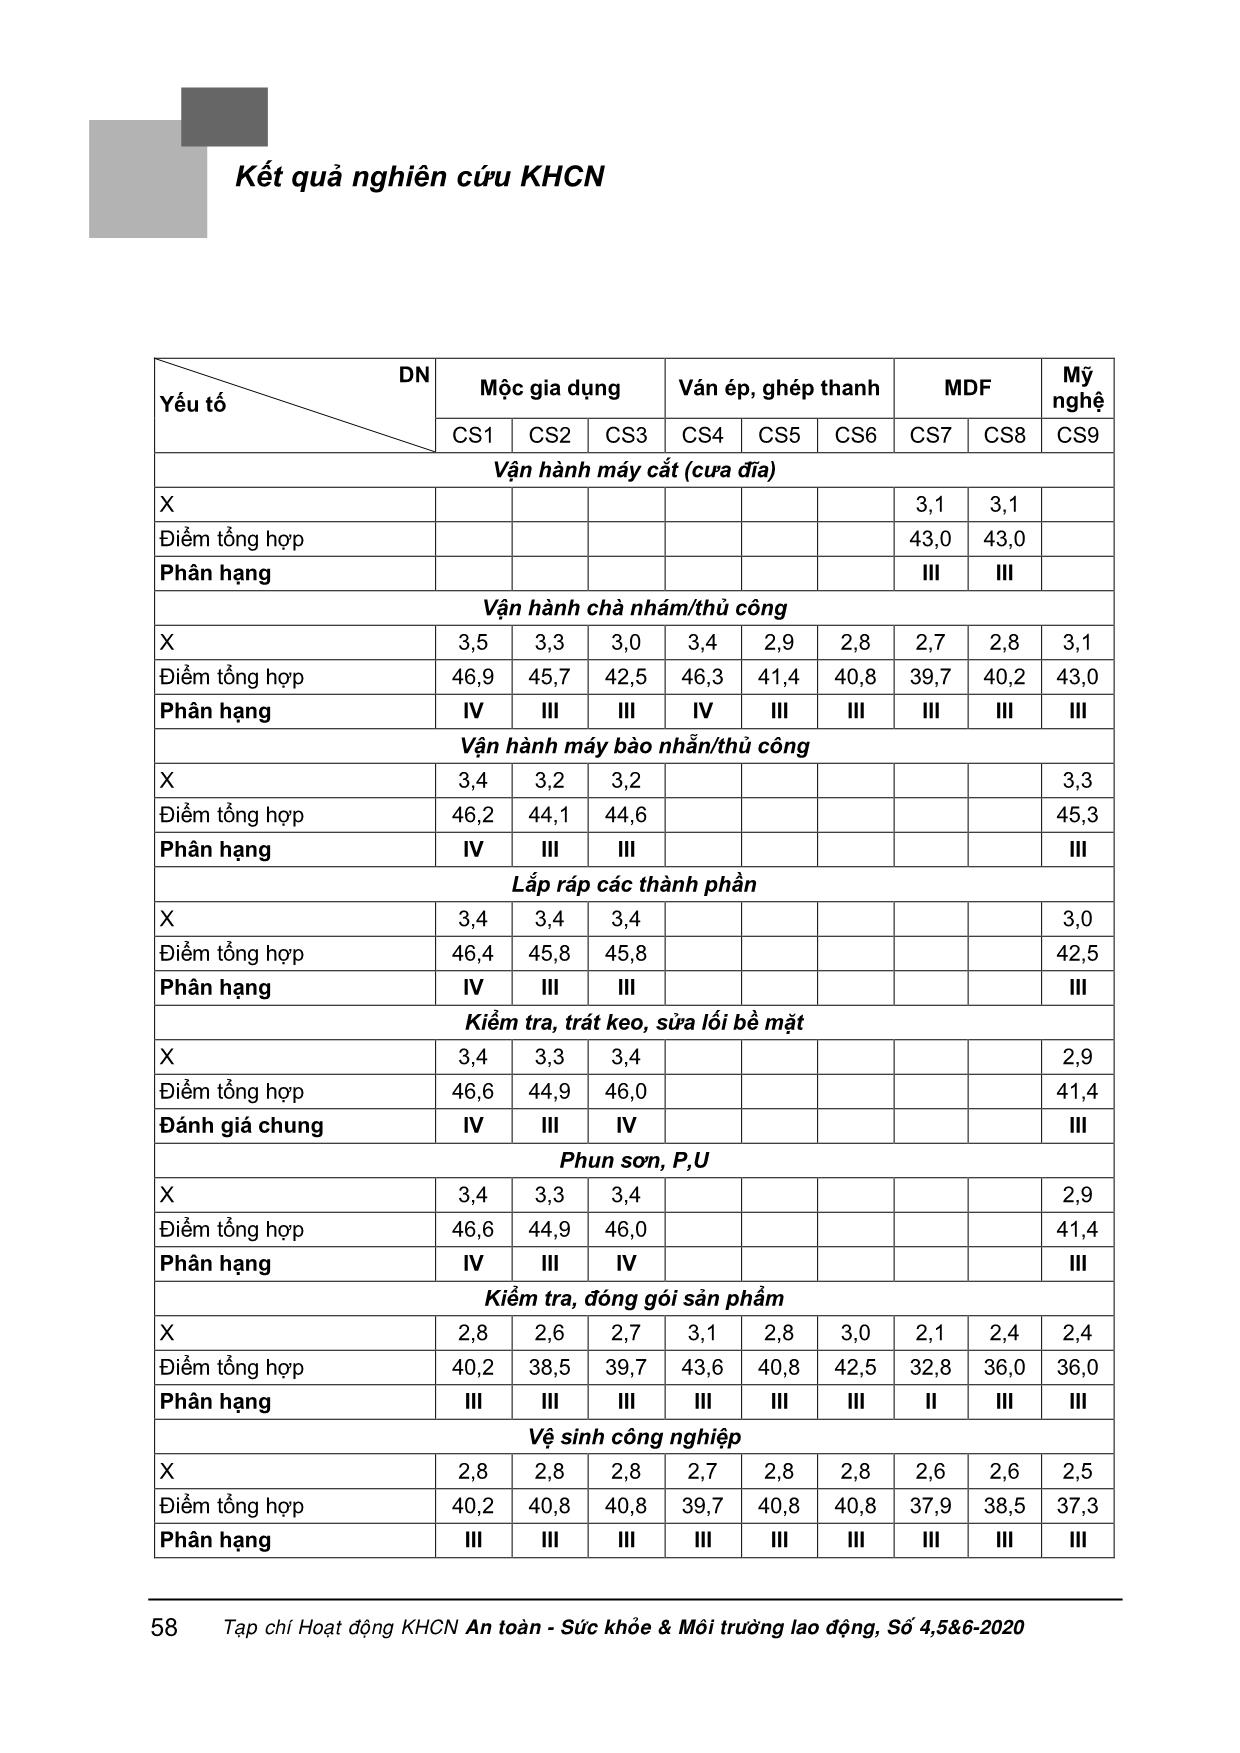 Đánh giá điều kiện lao động tại một số cơ sở chế biến gỗ khu vực miền Trung theo phương pháp của bộ lao động thương binh và xã hội và so sánh với kết quả đánh giá theo phương pháp VNNIOSH-2017 trang 8